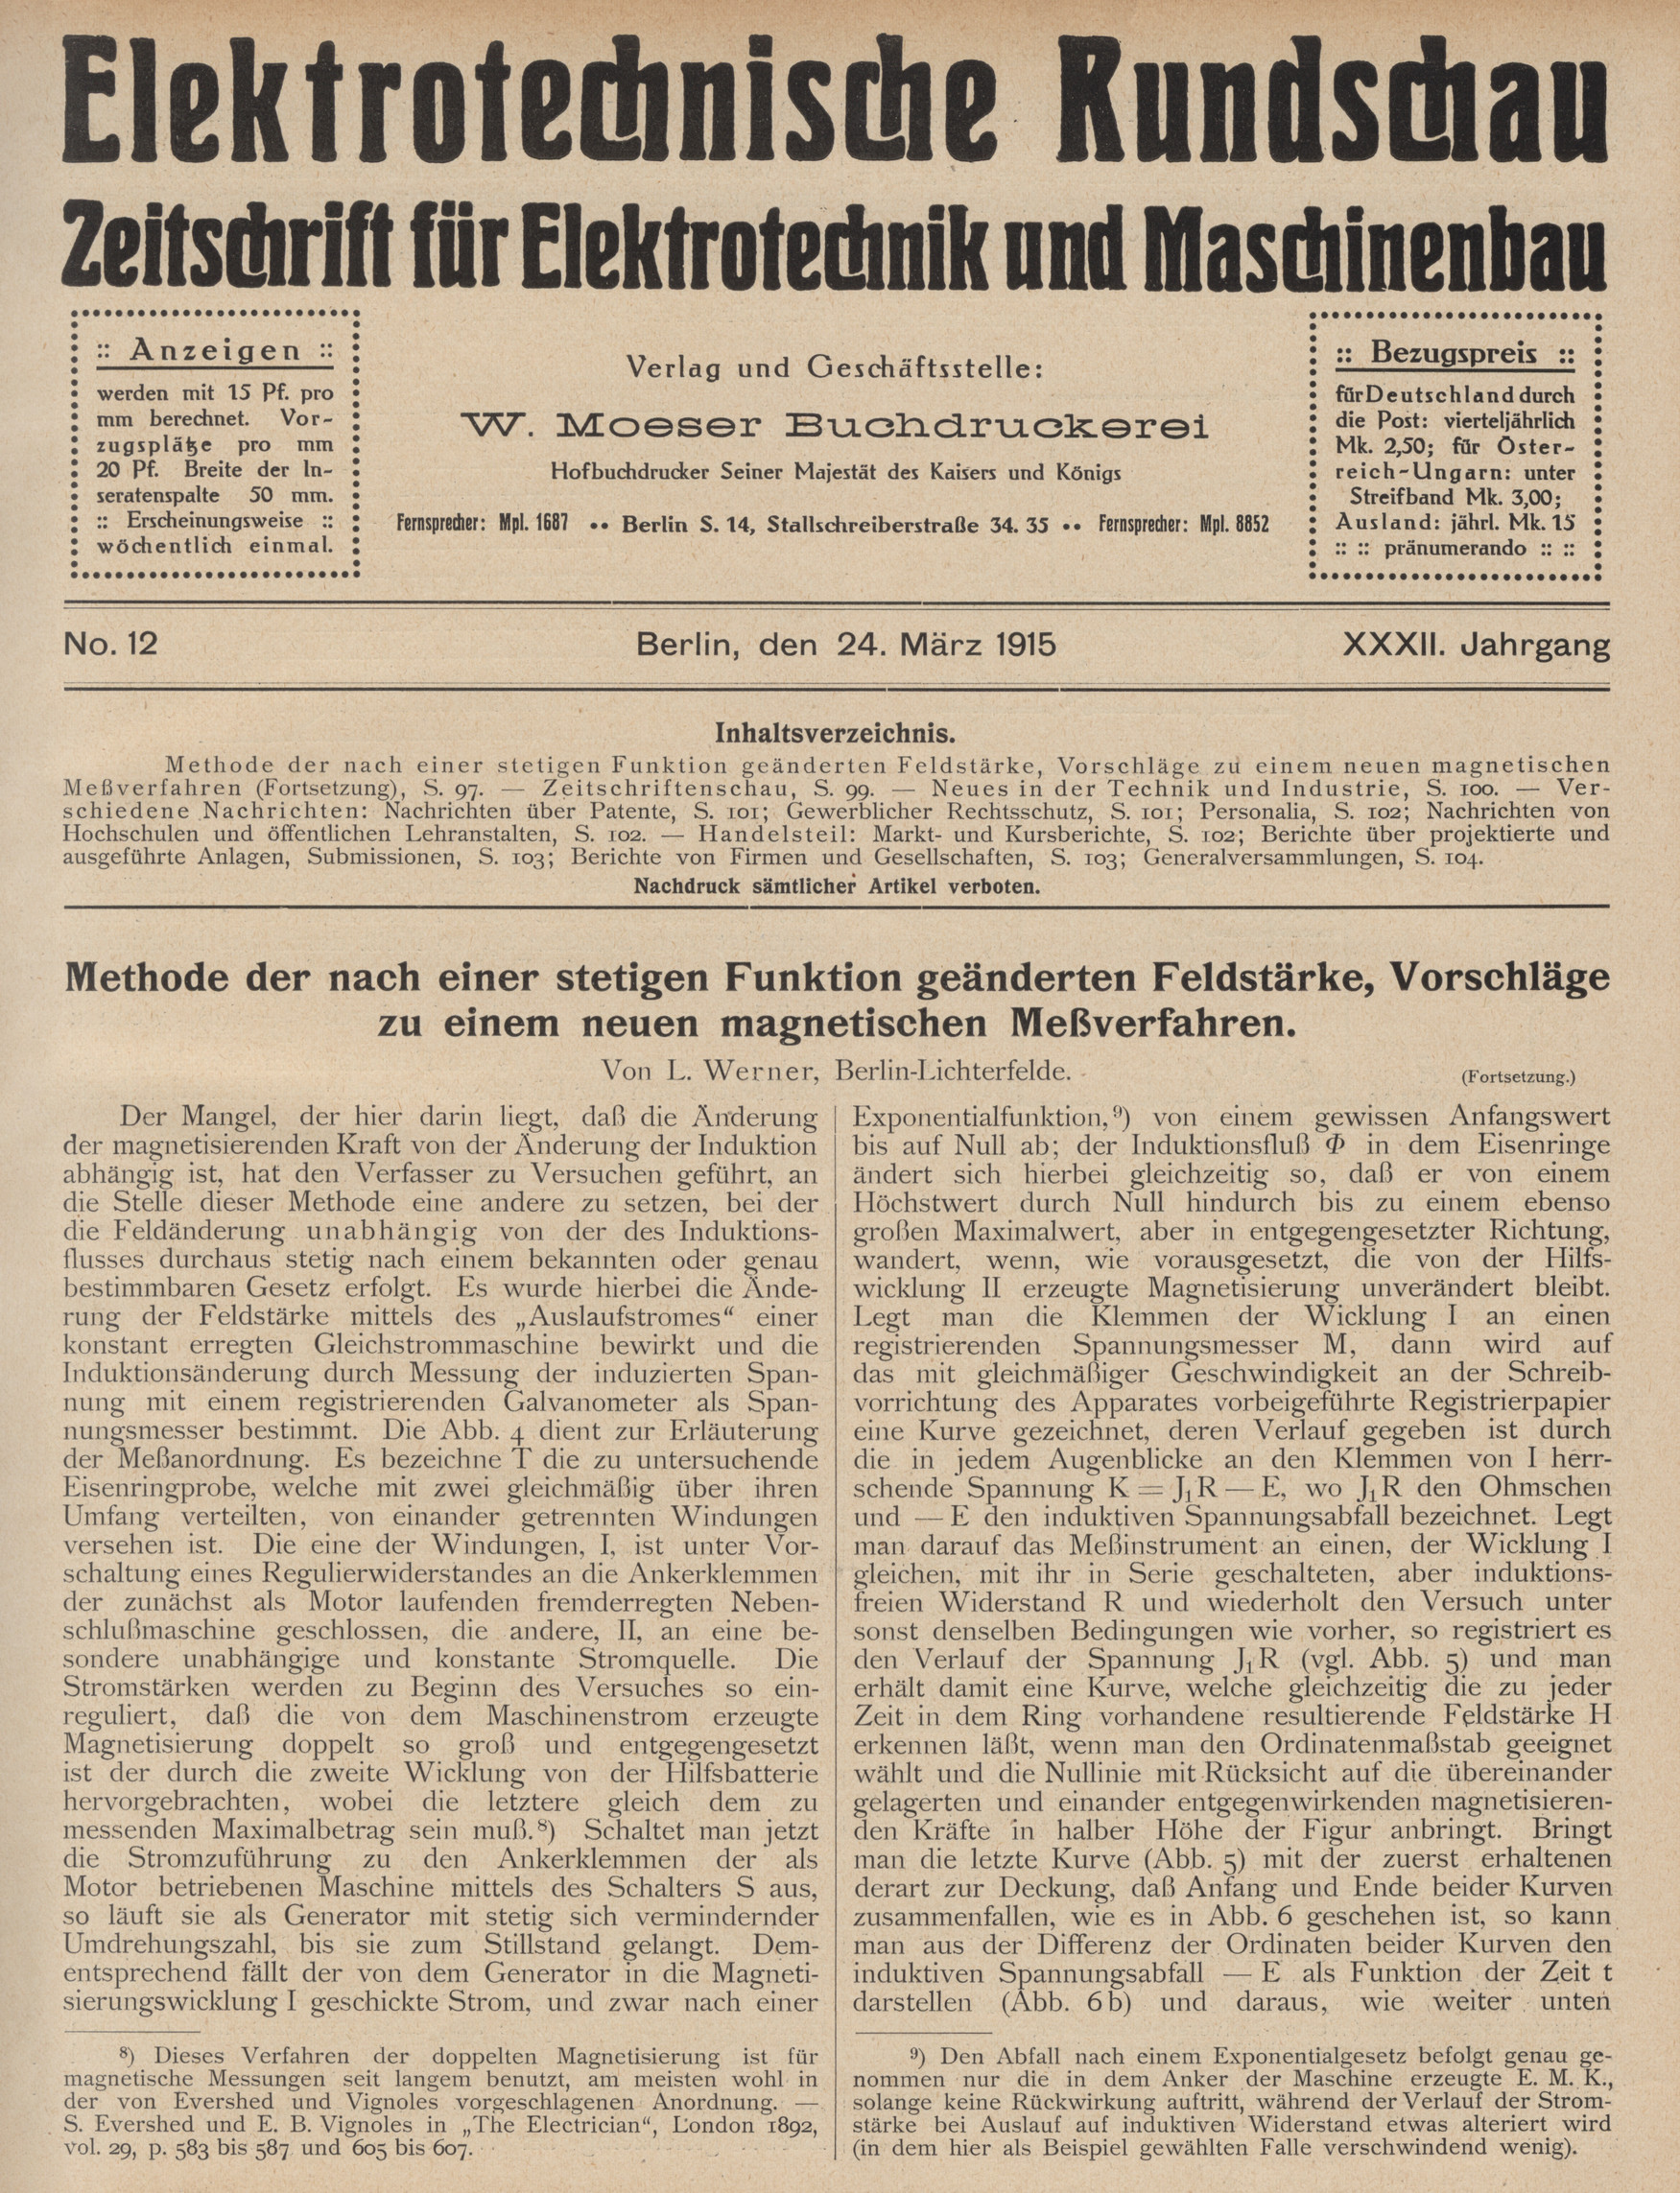 Elektrotechnische Rundschau : Zeitschrift für Elektrotechnik und Maschinenbau + Polytechnische Rundschau, No. 12, XXXII. Jahrgang